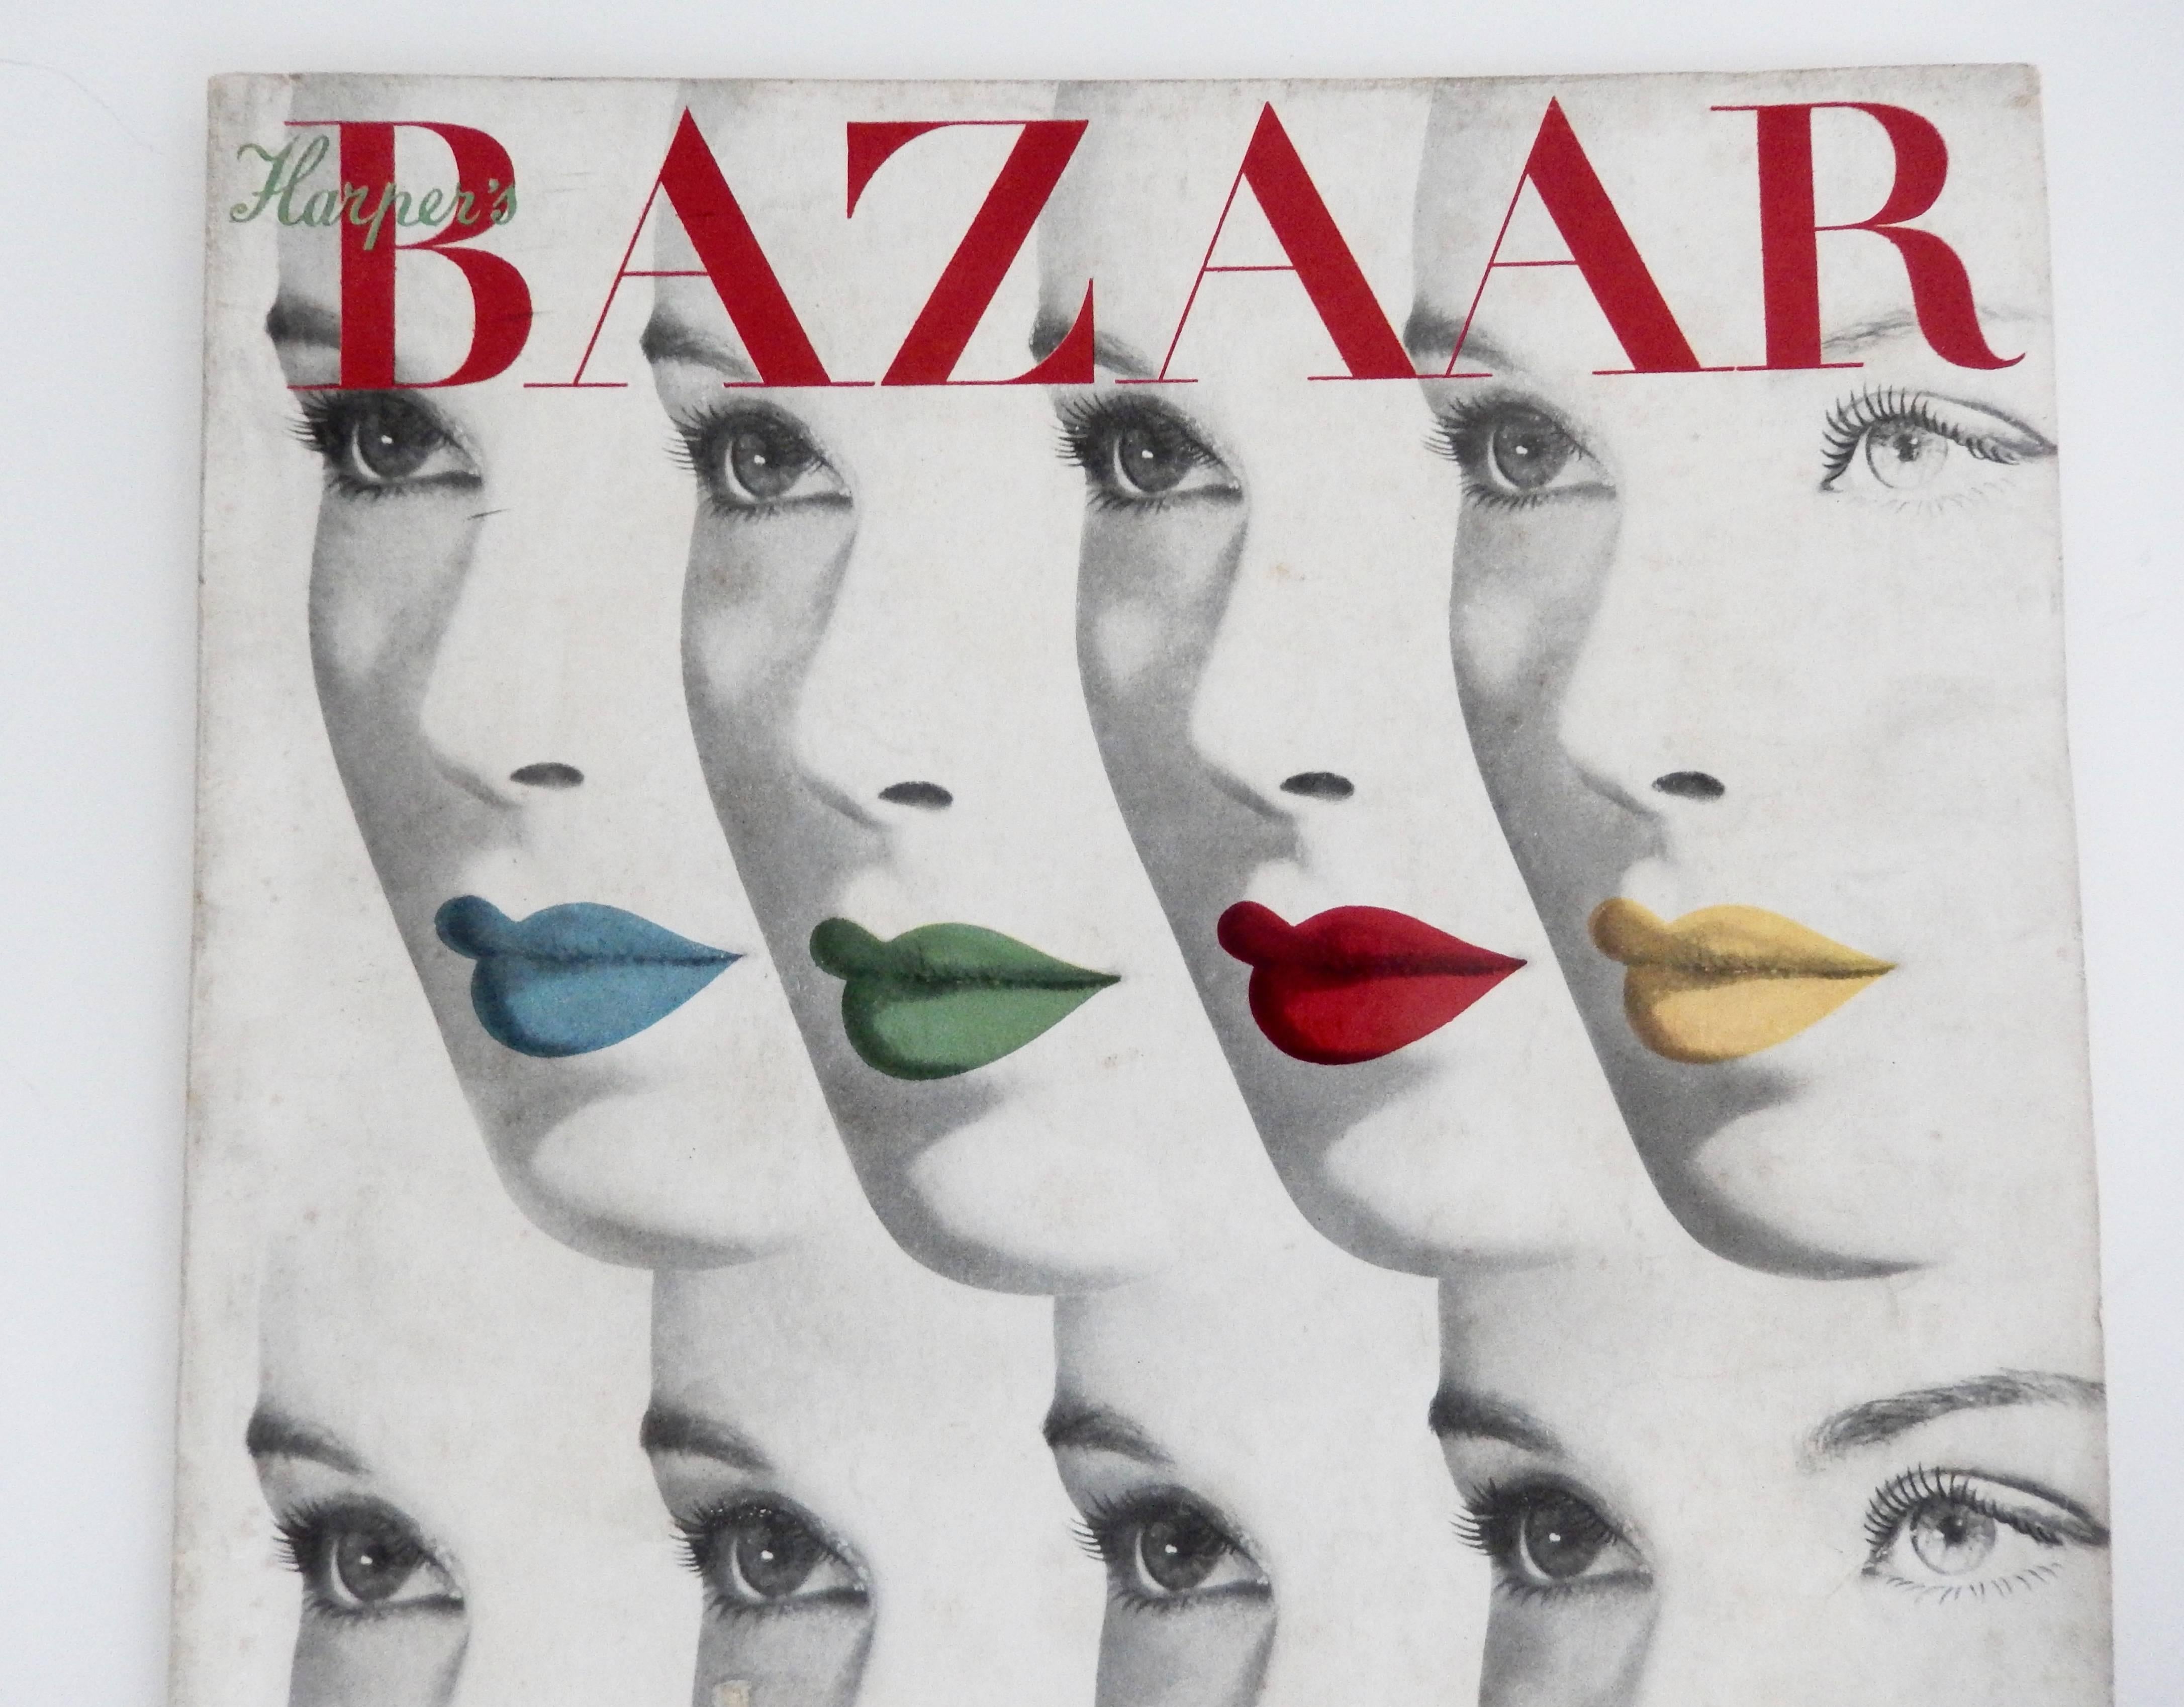 L'emblématique couverture à visages multiples d'Herbert Bayer pour le numéro d'août 1940 de Harper's Bazaar. Il s'agit du magazine complet. Rare. Une addition importante à une collection de design graphique du 20ème siècle. L'illustration fascinante